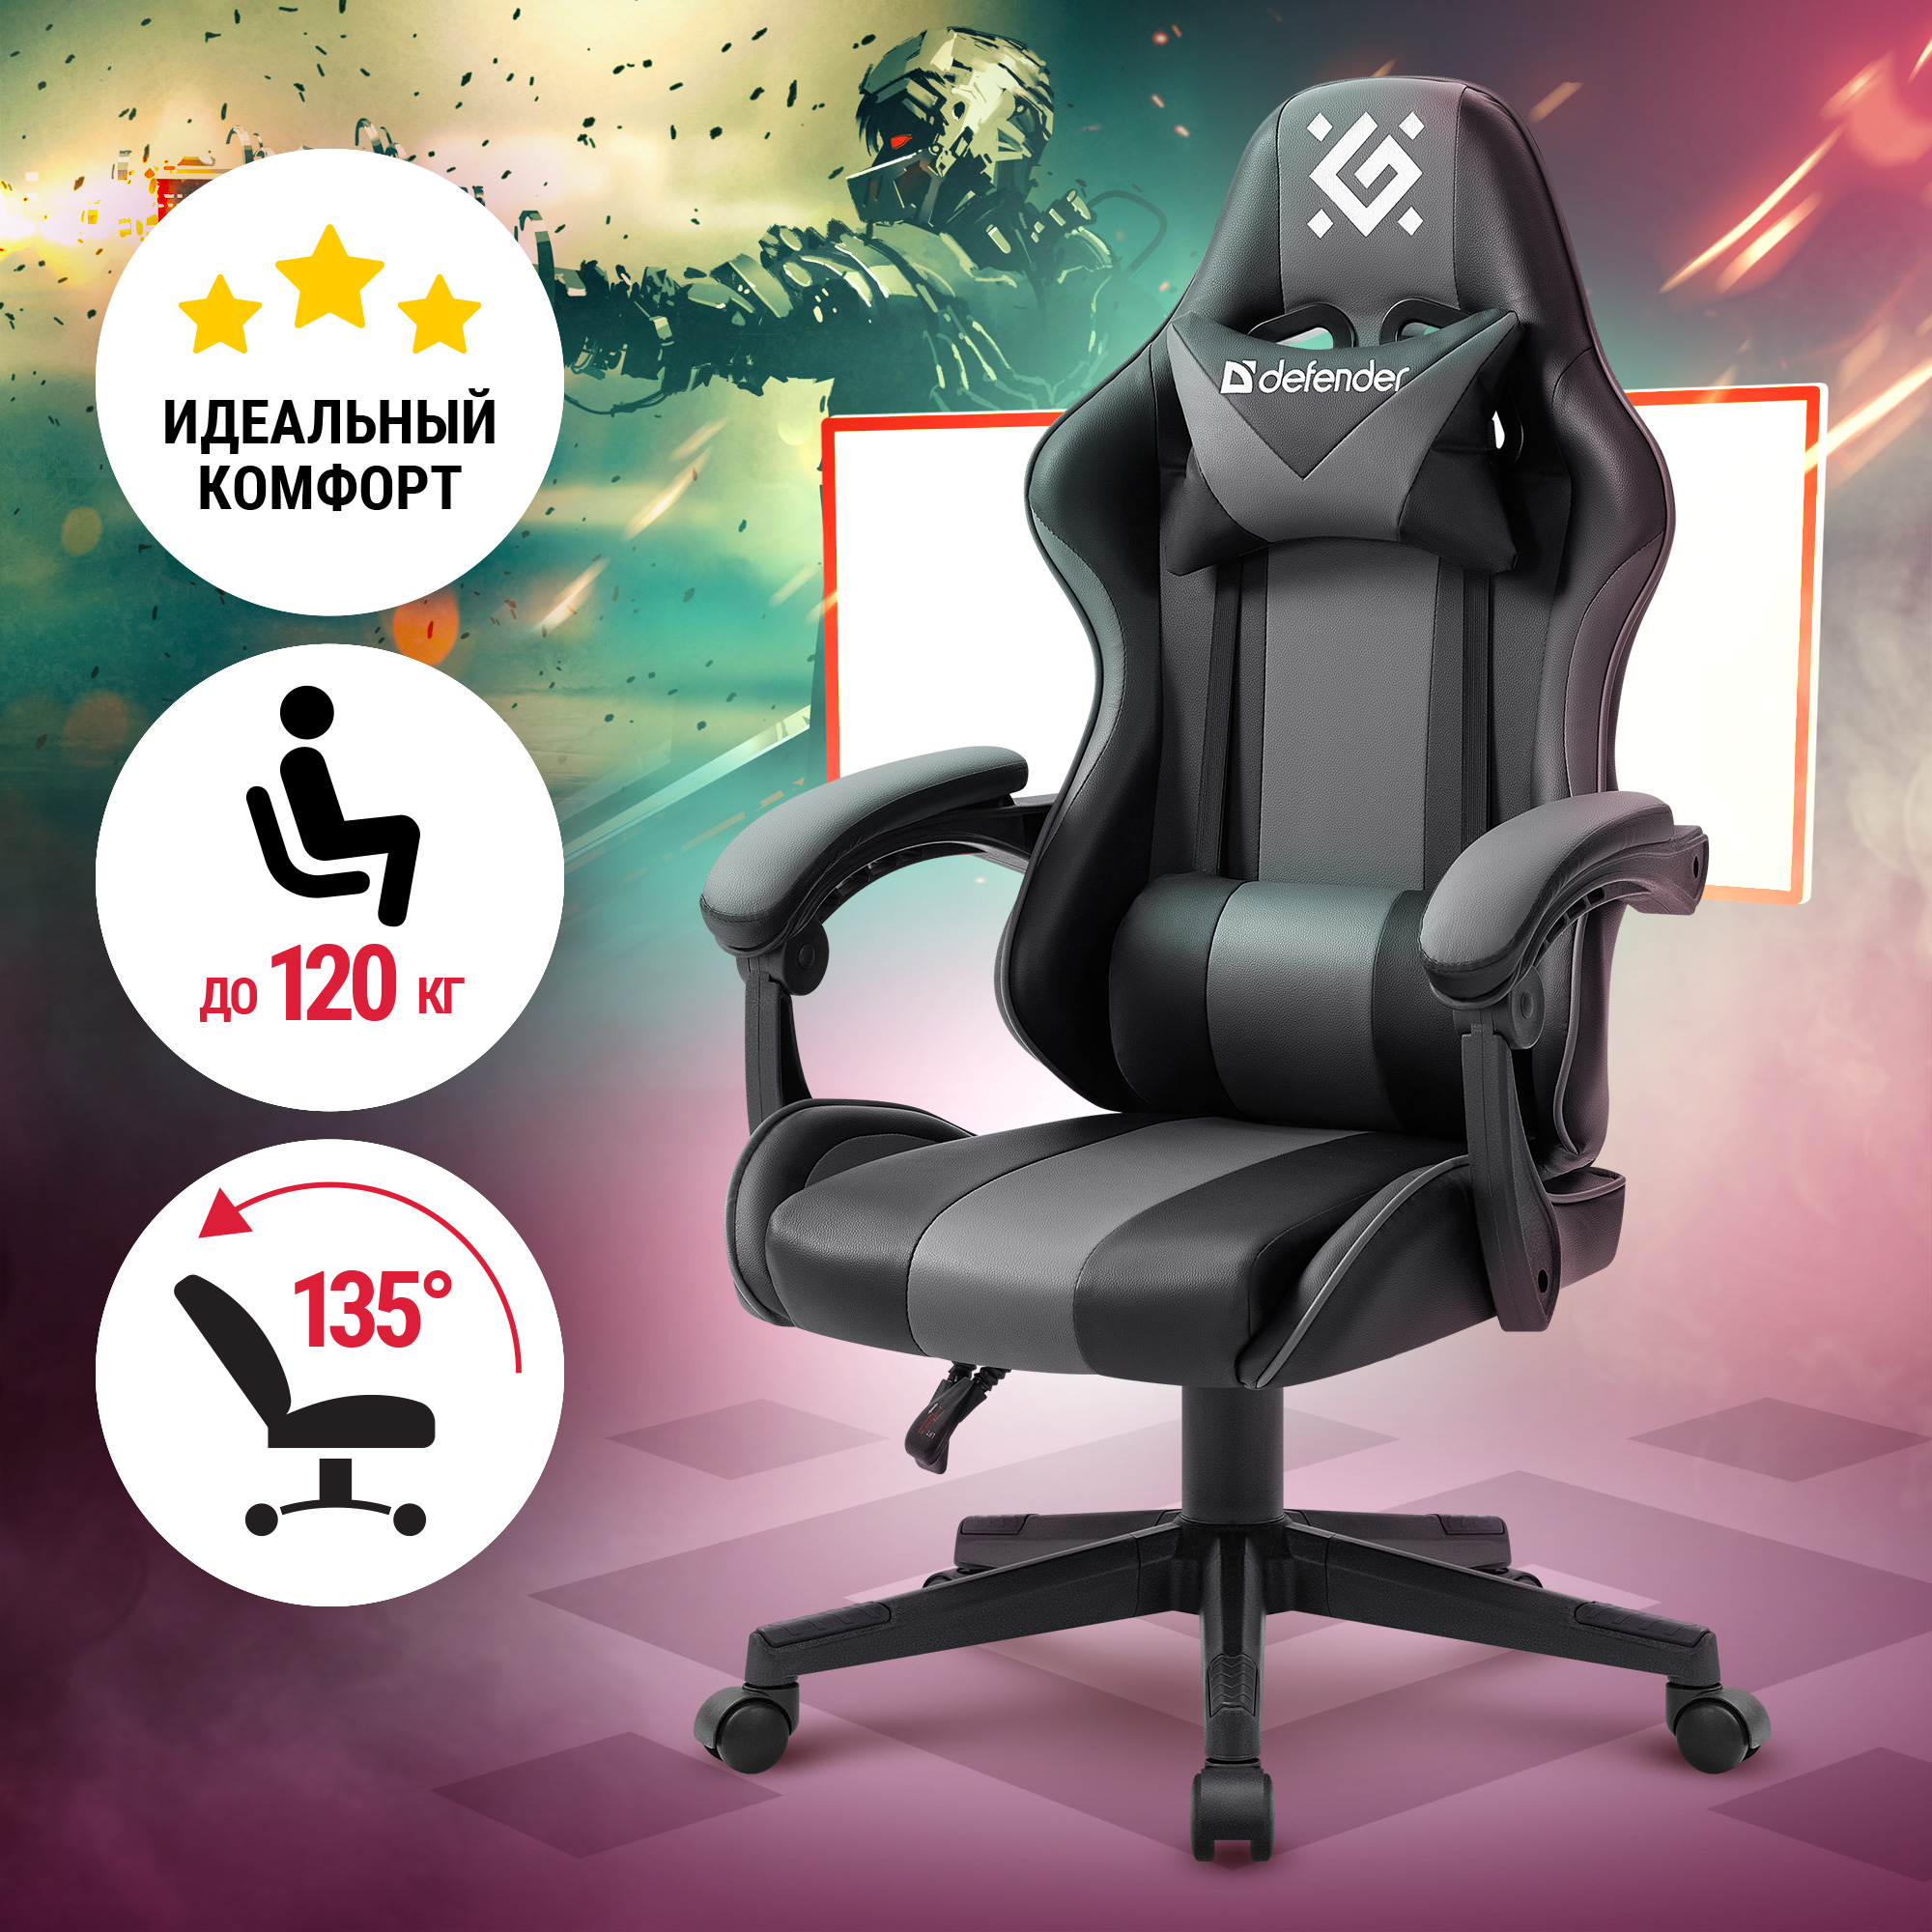 Кресло игровое Defender Cosmic, черный/серый - купить в Москве, цены на Мегамаркет | 600014931493